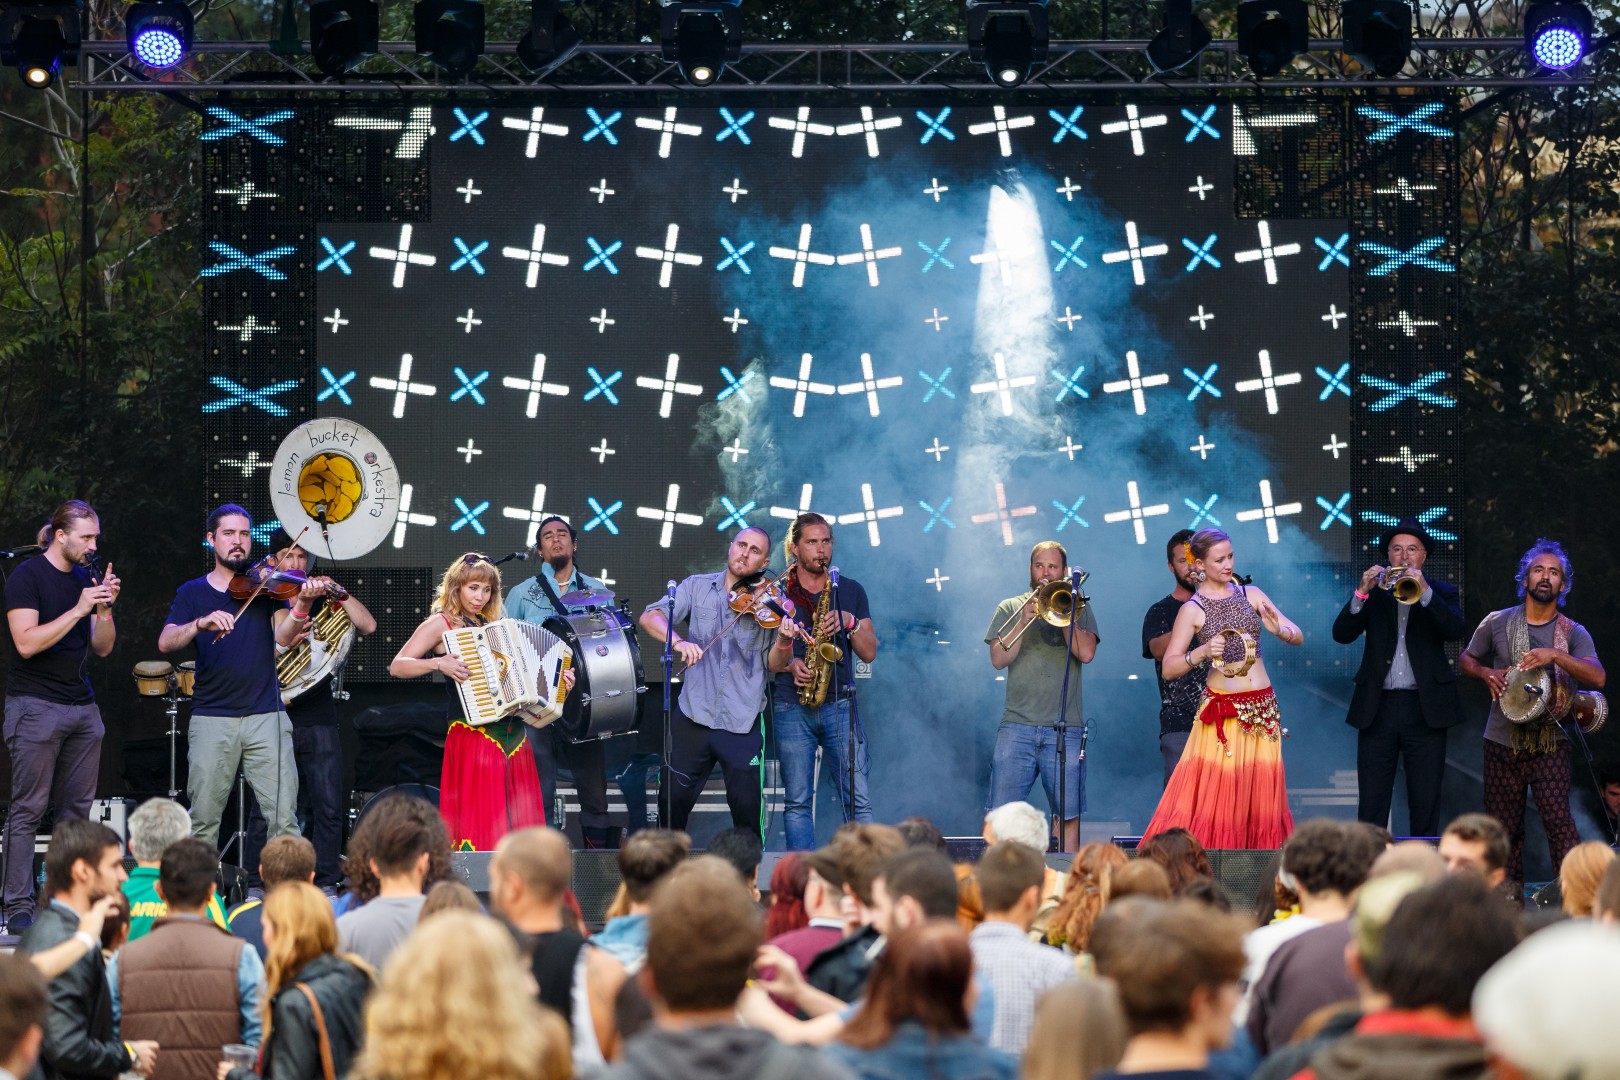 The Lemon Bucket Orkestra at Grădina Uranus in Bucharest on September 12, 2015